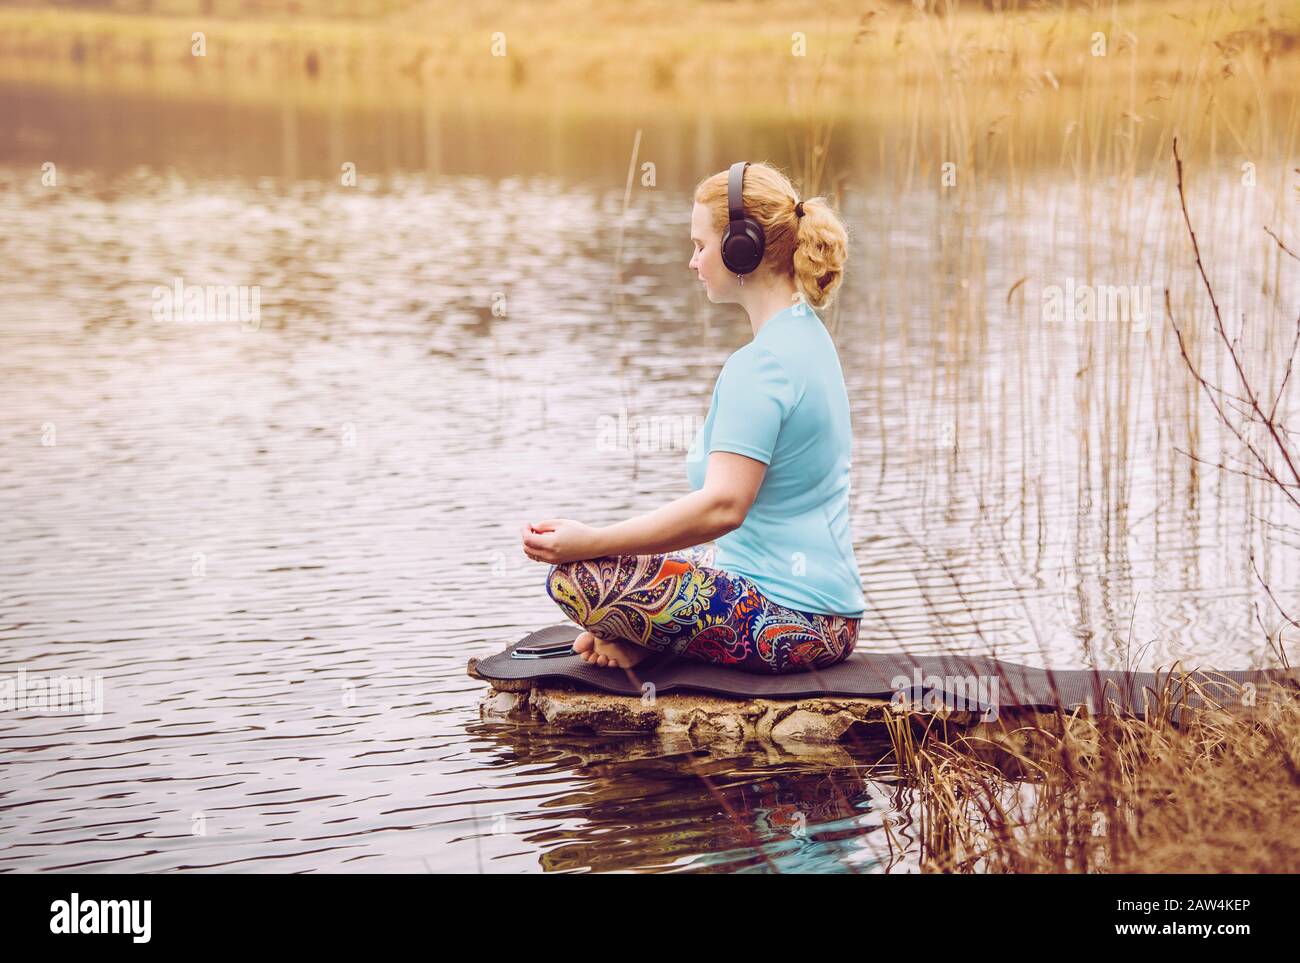 Une femme cheveux blonde s'assoit à l'extérieur par l'eau et écoute la méditation audioguidée du smartphone, portant des vêtements de sport bleus. Chaud jour ensoleillé. Banque D'Images